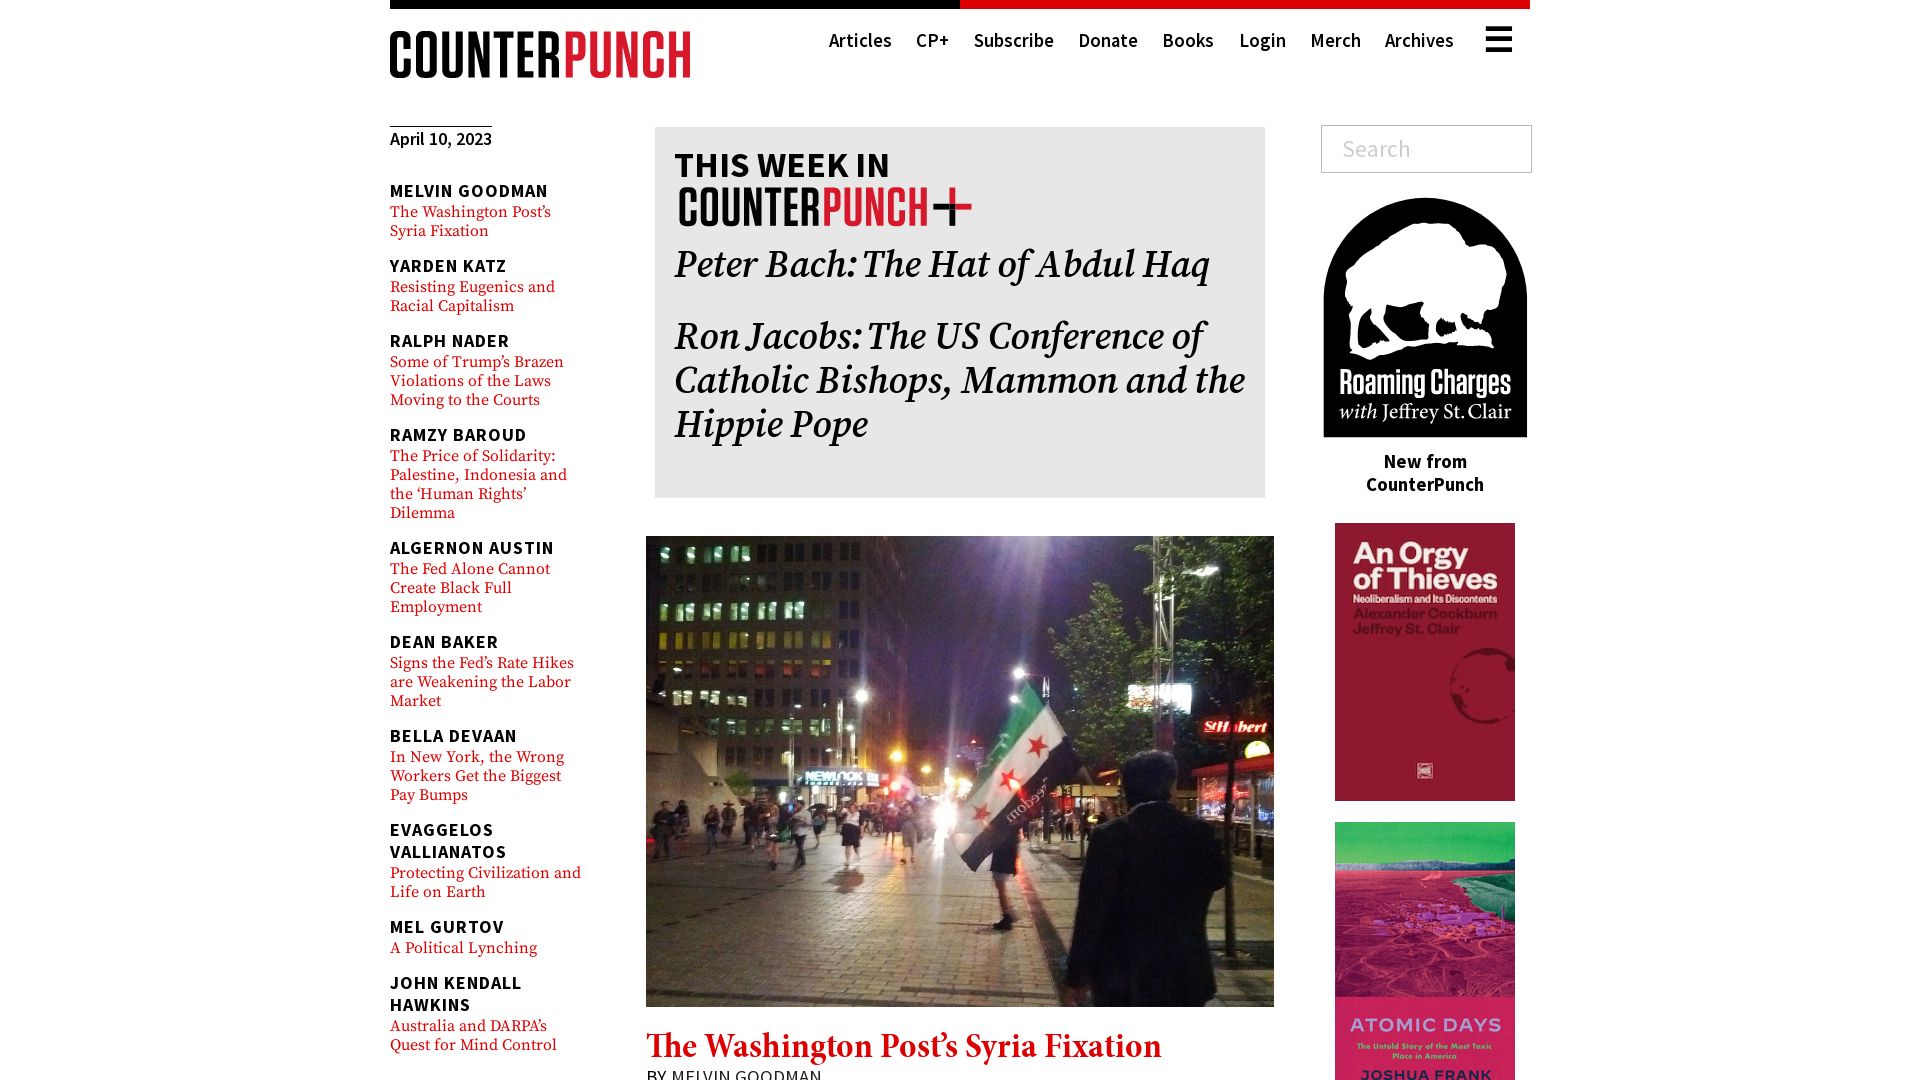 État du site web counterpunch.org est   EN LIGNE